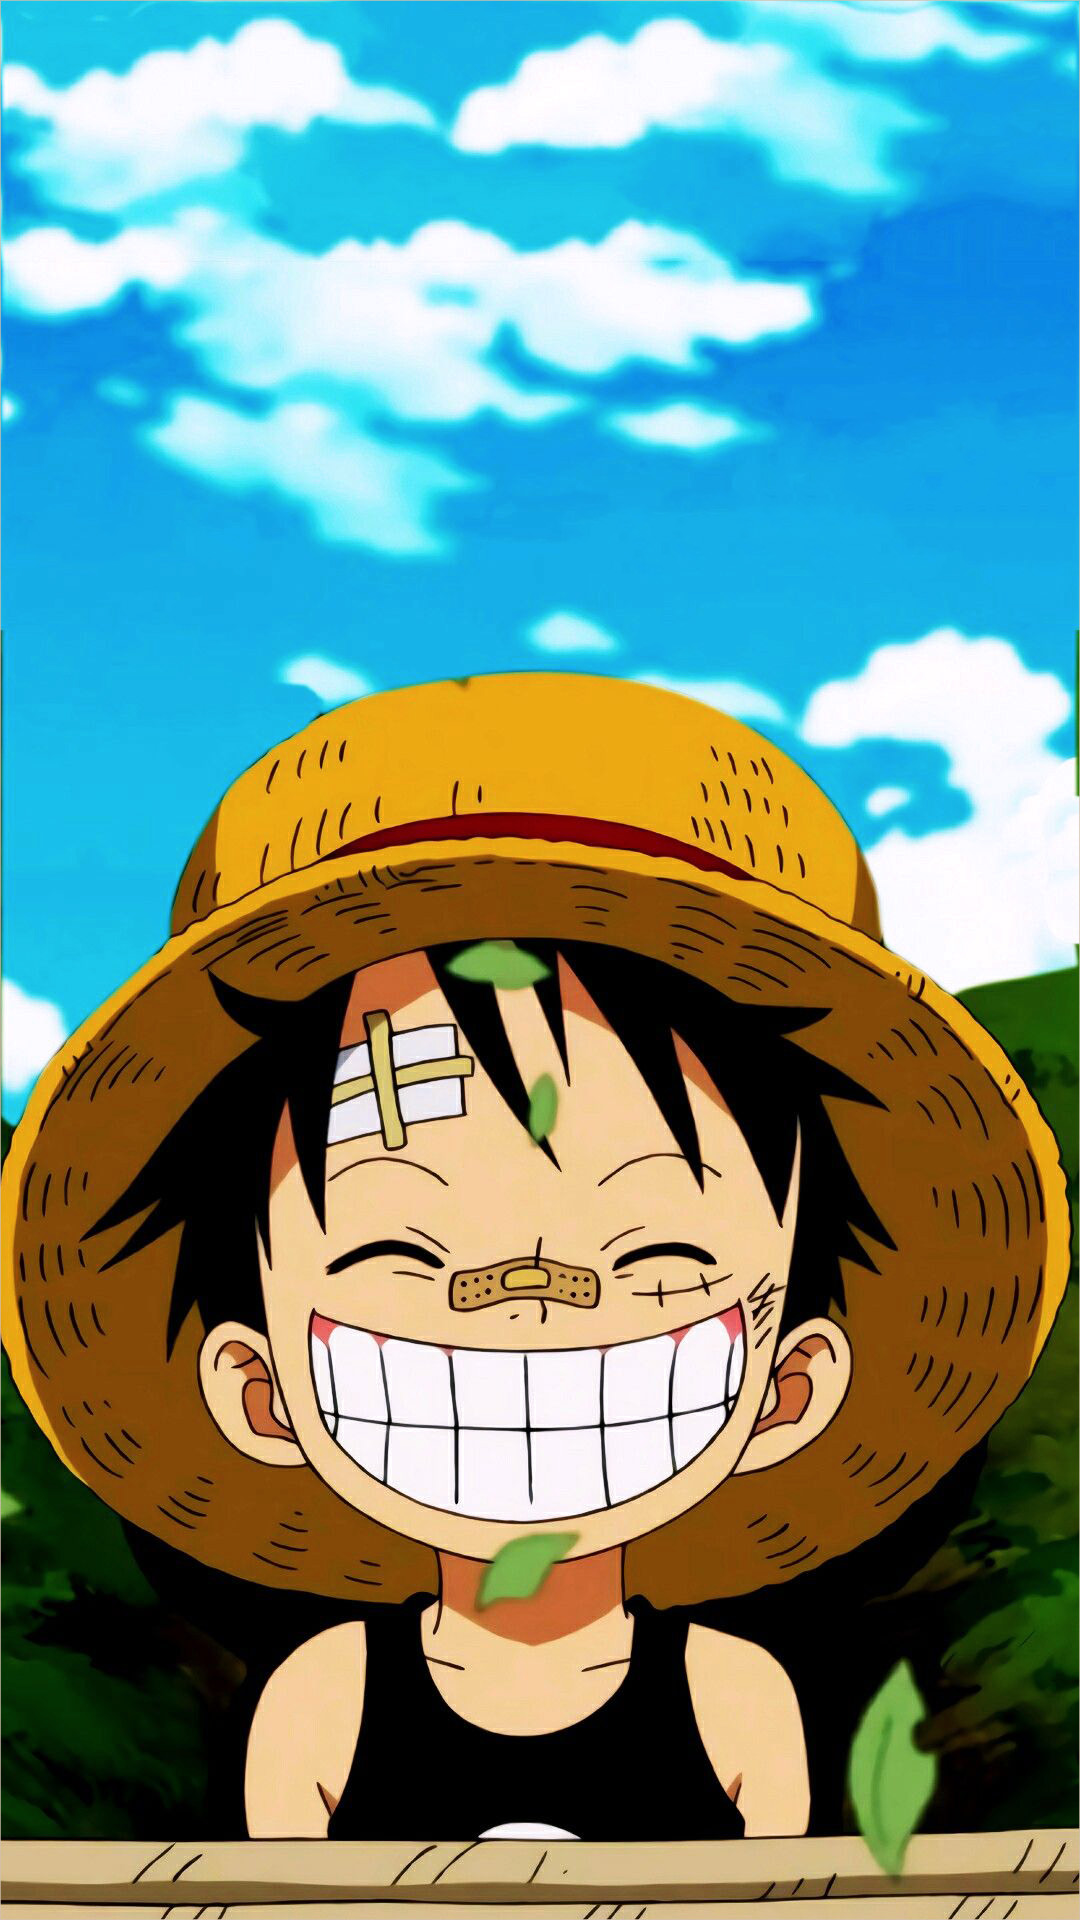 Hình ảnh Luffy sẽ khiến bạn ngạc nhiên và thích thú vì sức ảnh hưởng của anh ta trên đám đông fan hâm mộ One Piece. Với khuôn mặt hồn nhiên và tính cách phóng khoáng, Luffy luôn là tâm điểm sự chú ý của các fan.